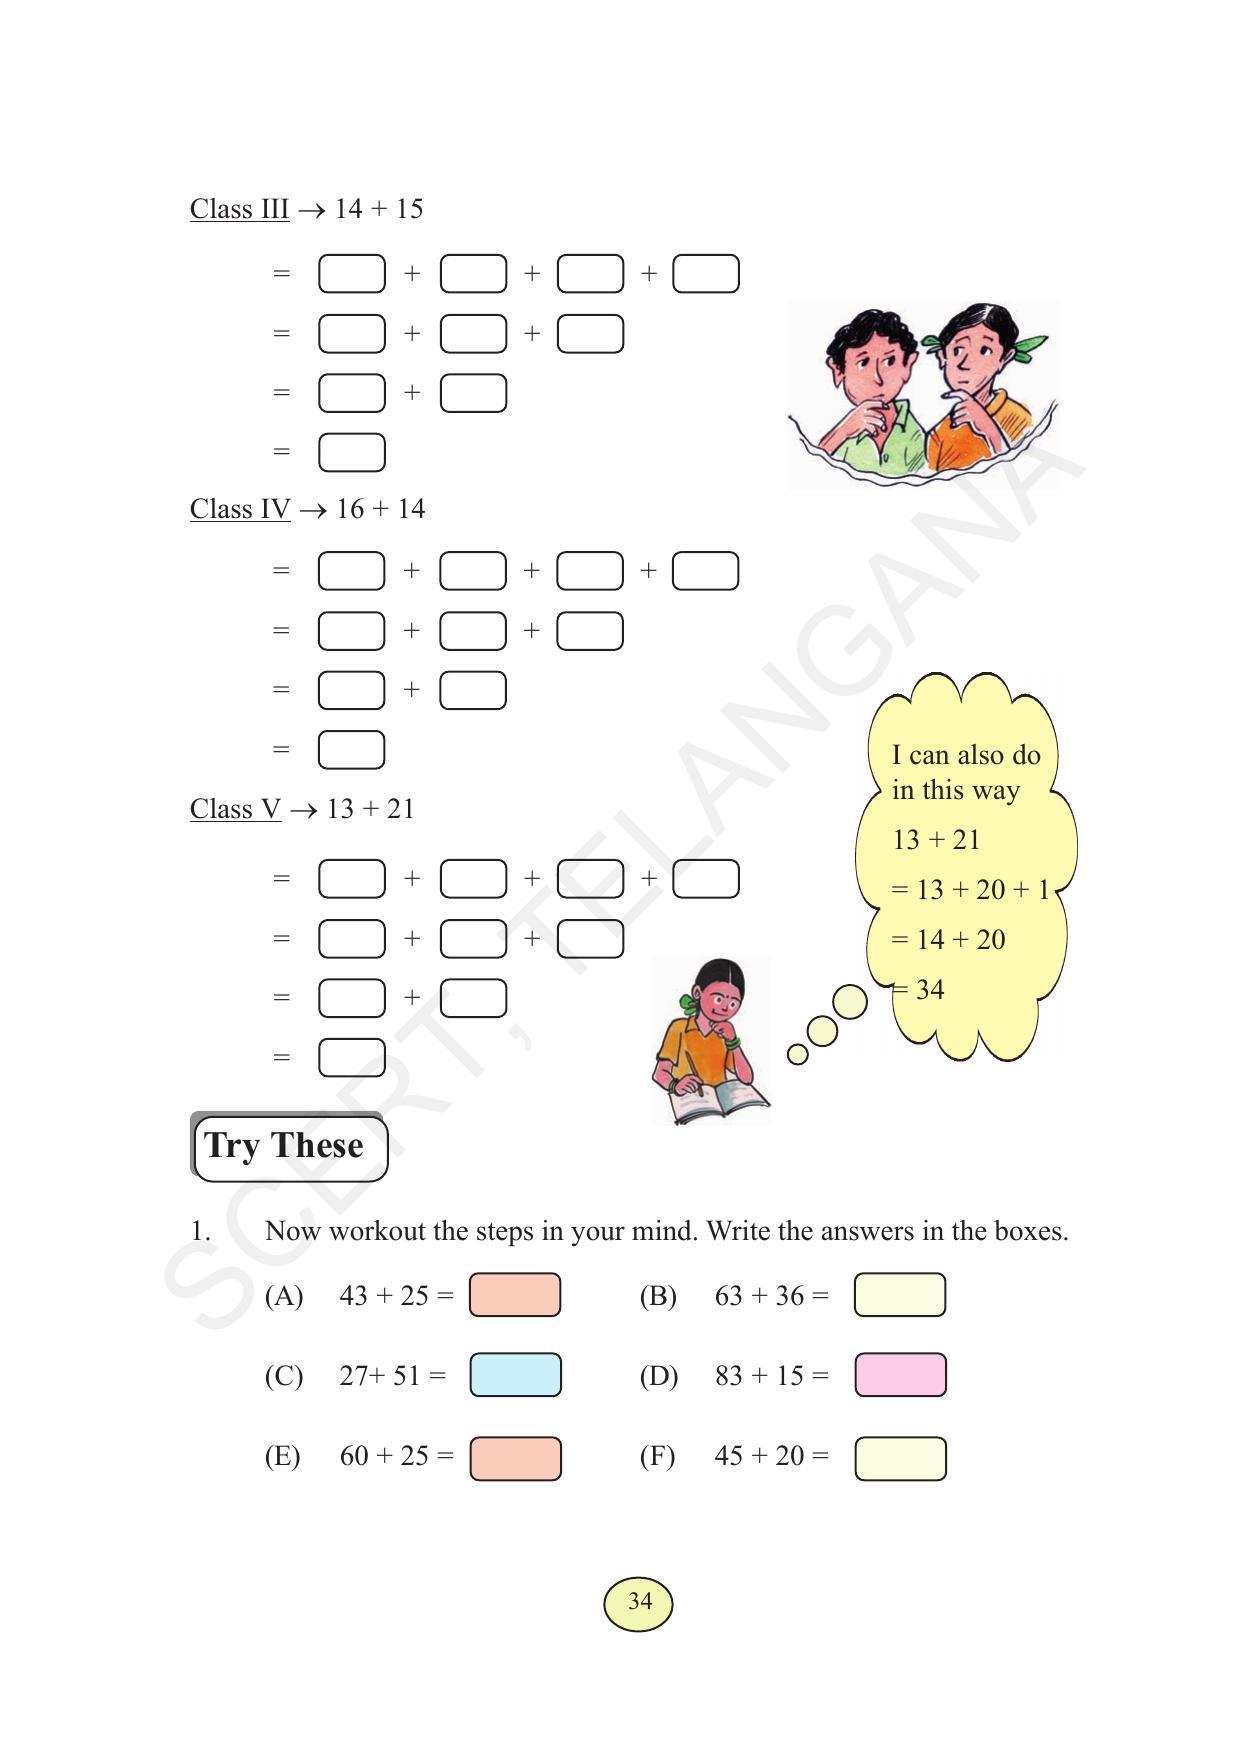 TS SCERT Class 3 Maths  (English Medium) Text Book - Page 42